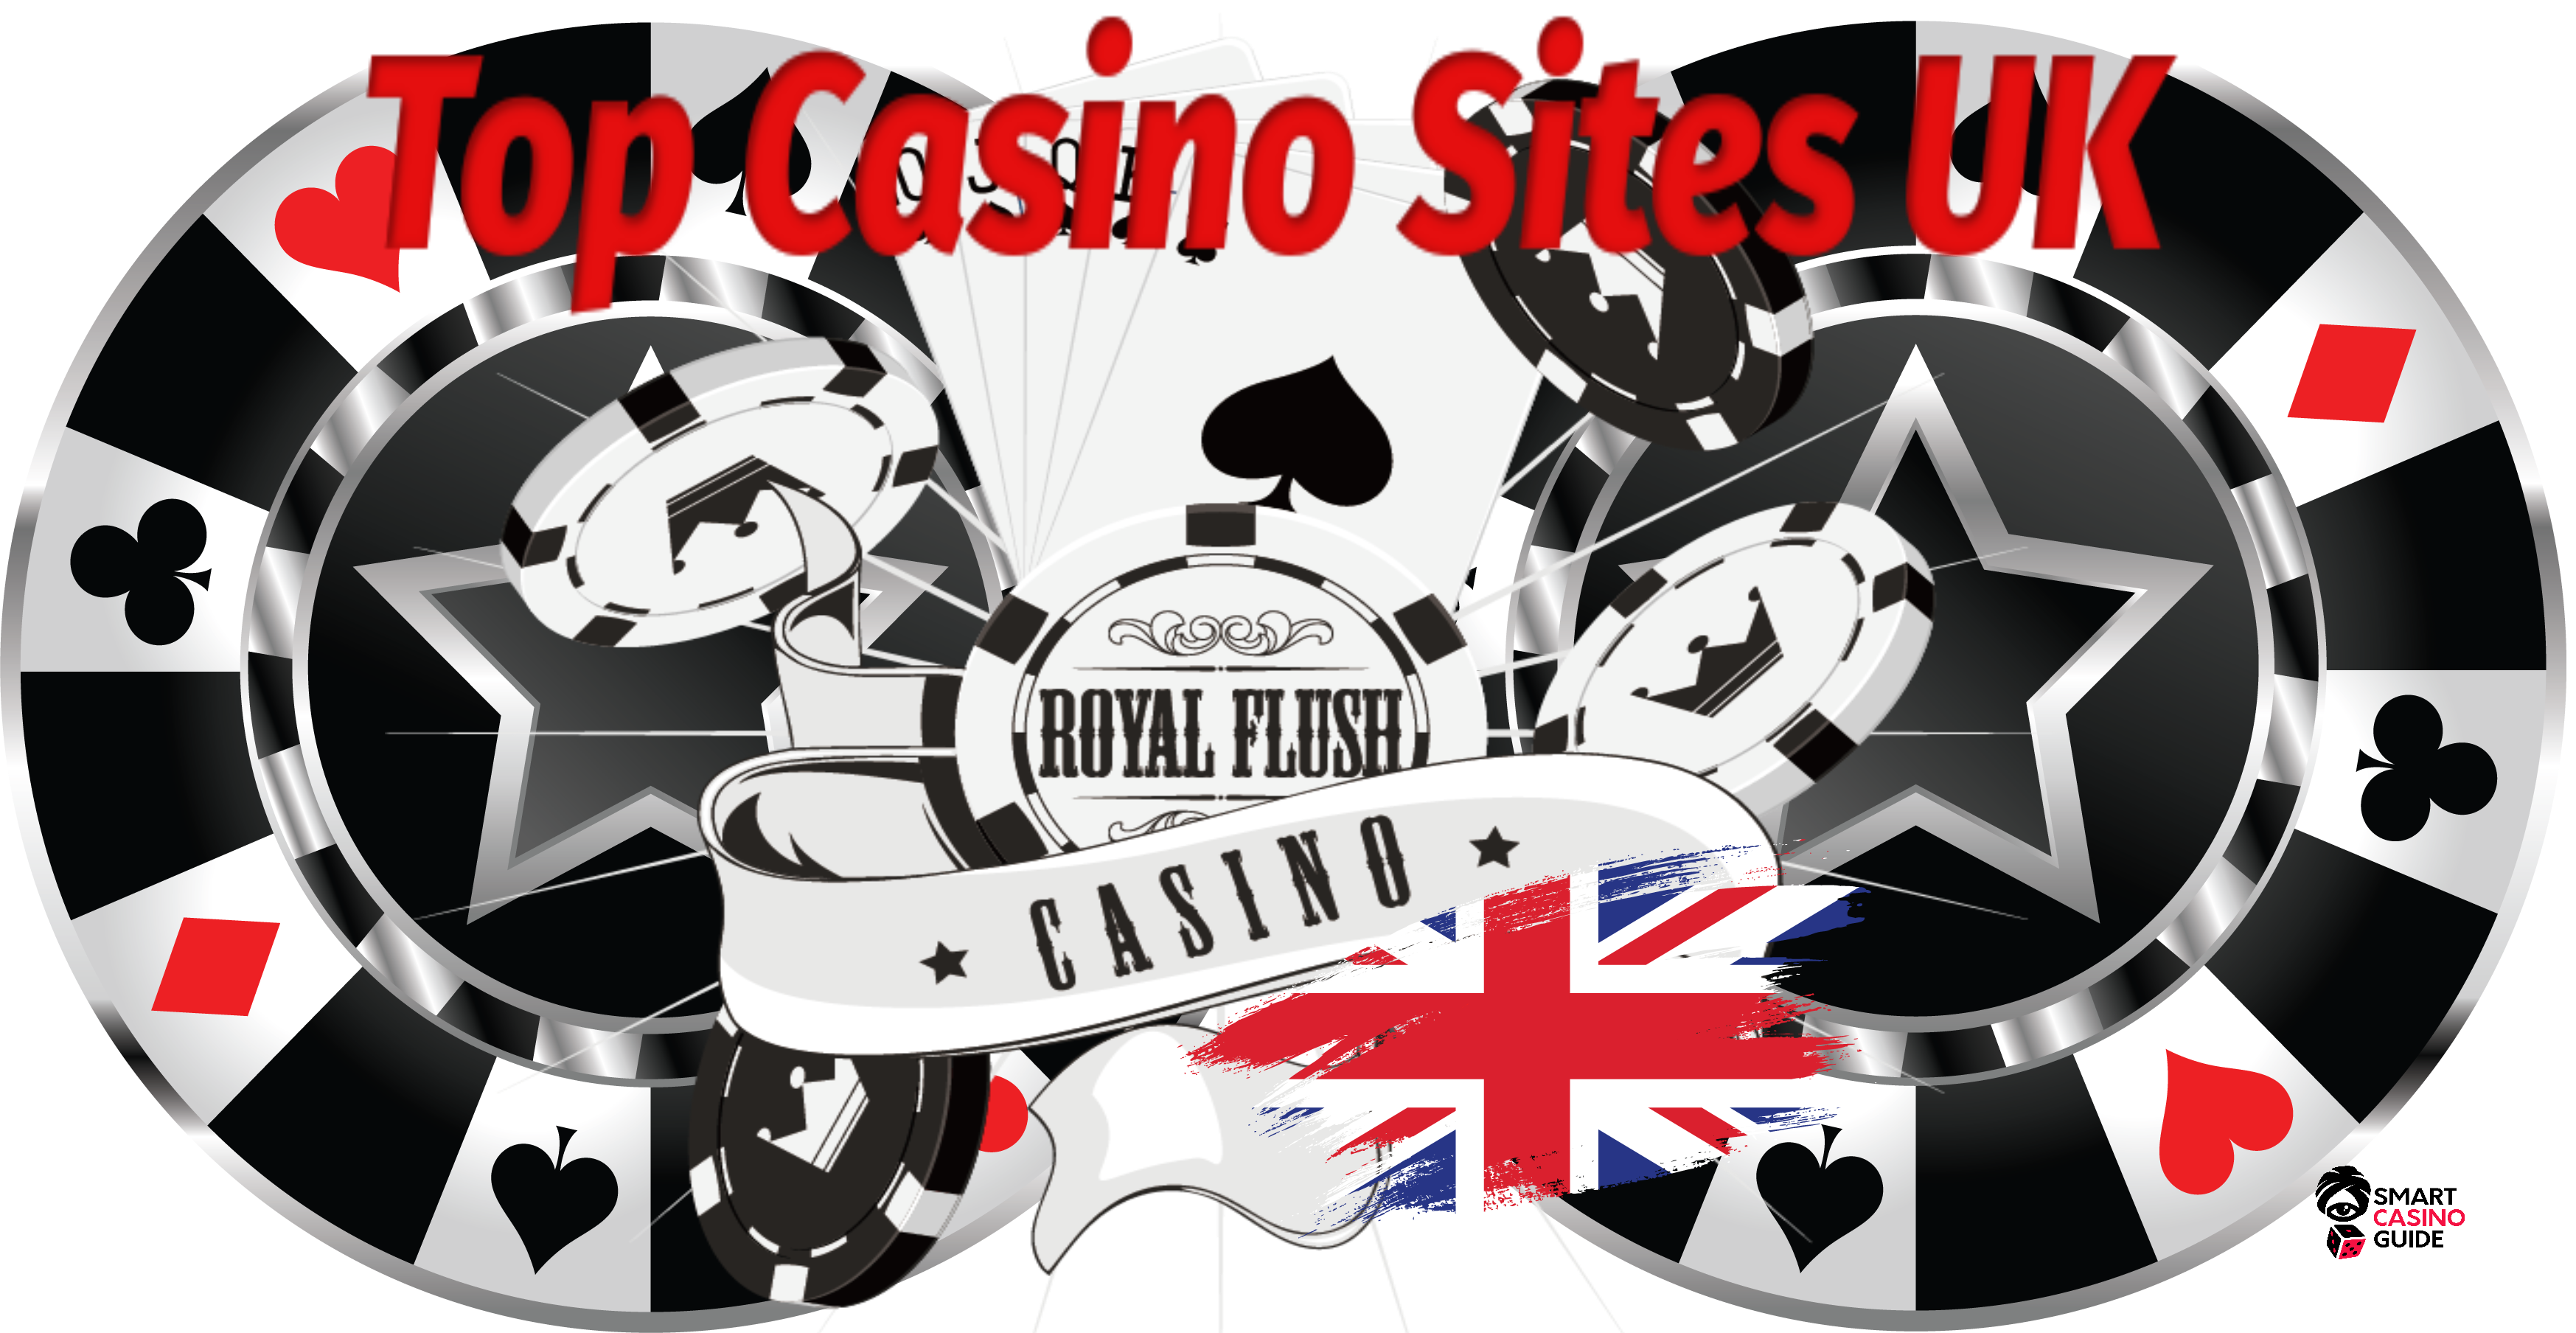 Top Casino Sites Uk